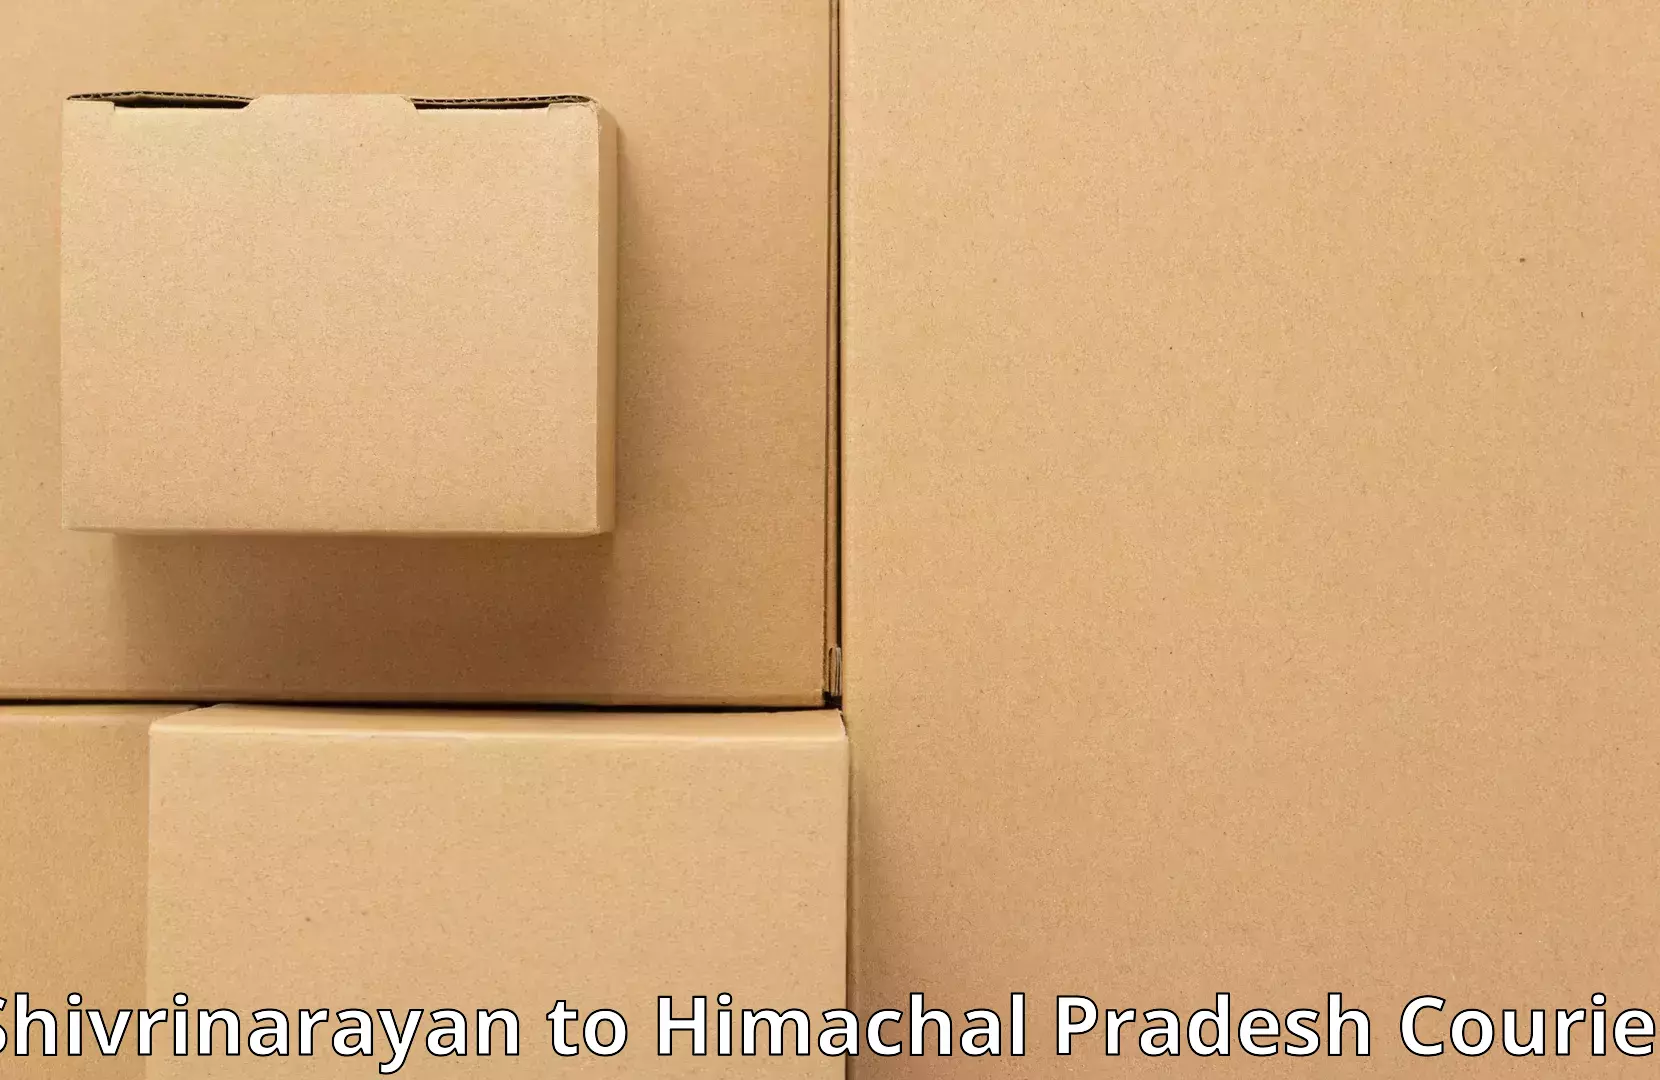 Furniture moving and handling Shivrinarayan to Sihunta